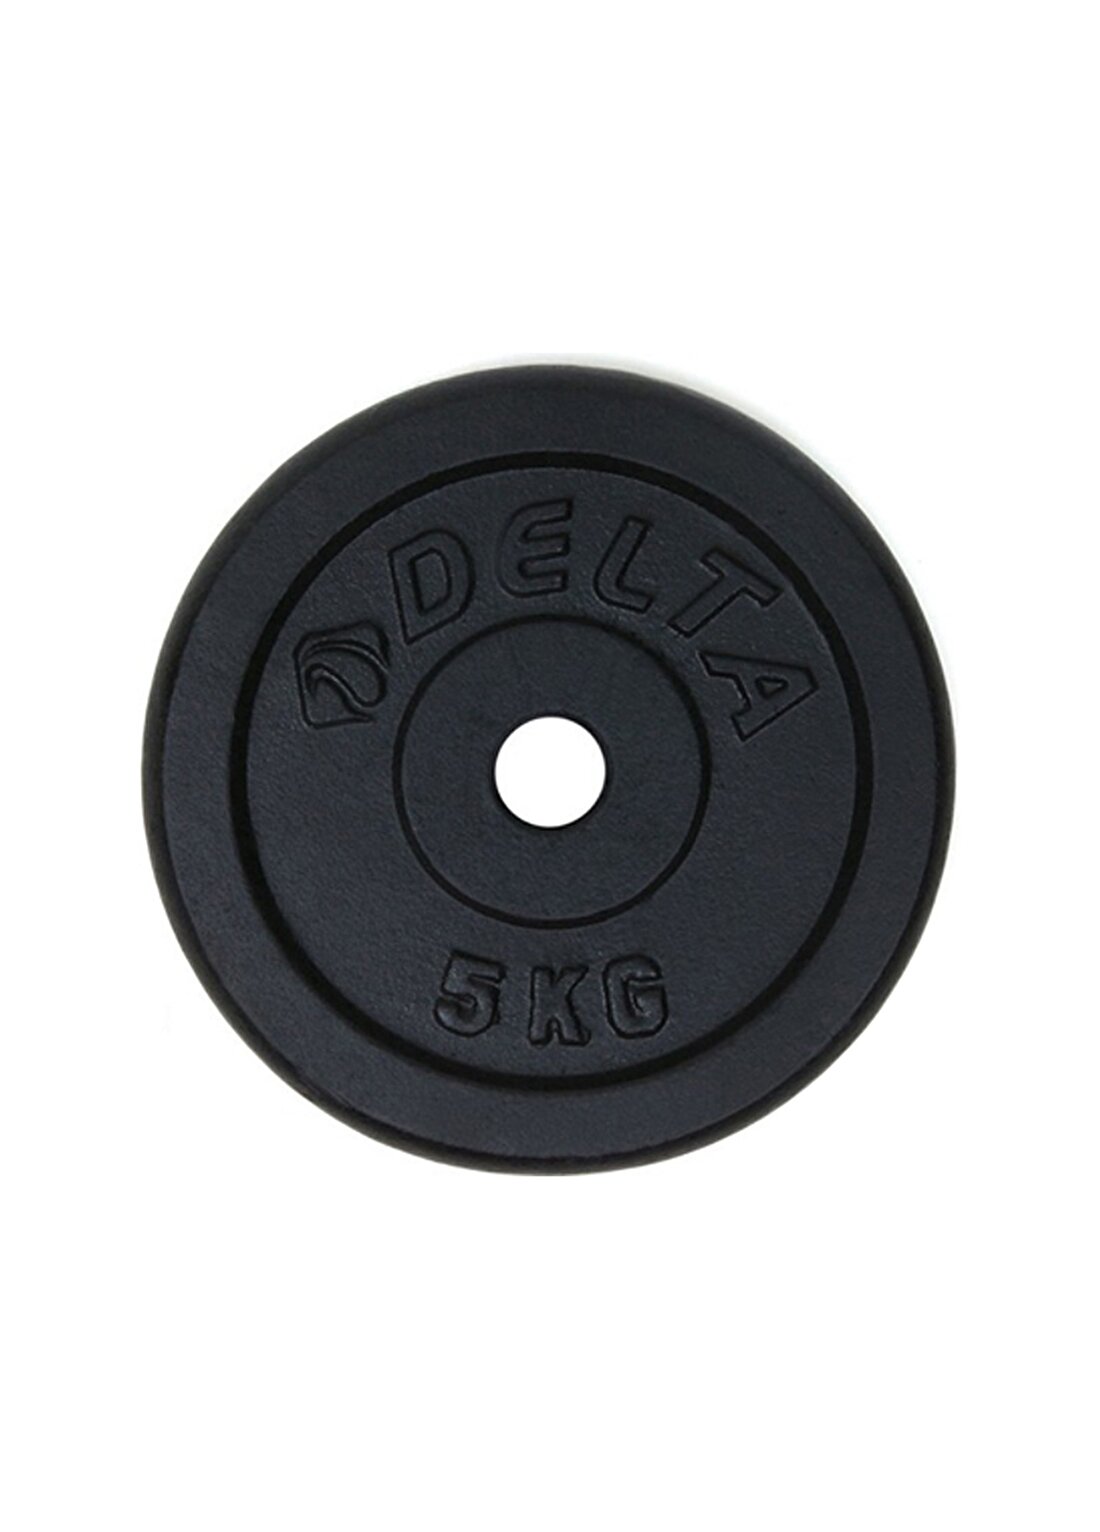 Deltaspor Parlak Siyah Döküm Plaka (Çiftli) 5 Kg X 2 Adet